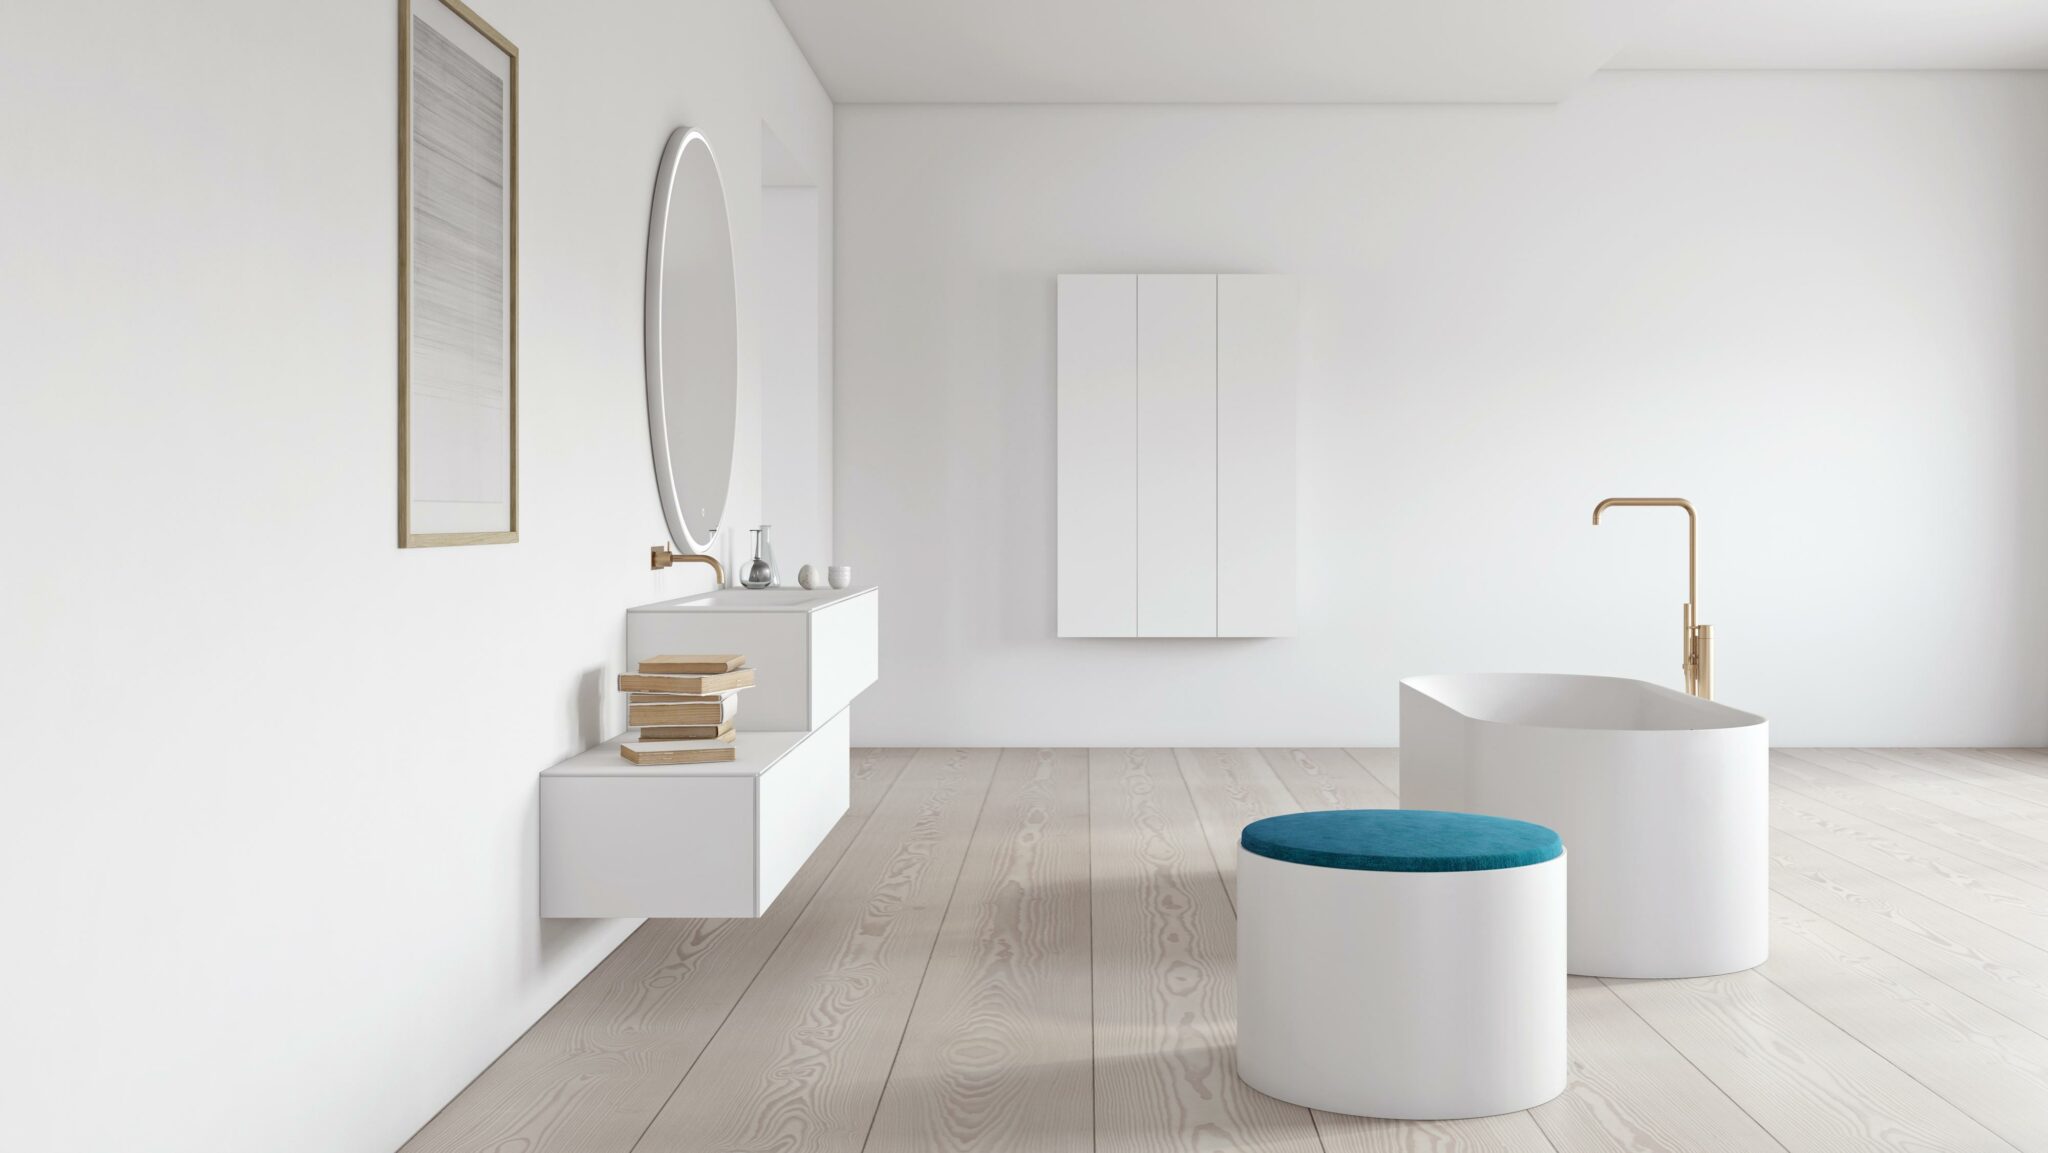 Copenhagen bath moderne skandinavisk design for moderne bad med japandi inspirasjon her med Sq1 ovalt badekar i solid surface